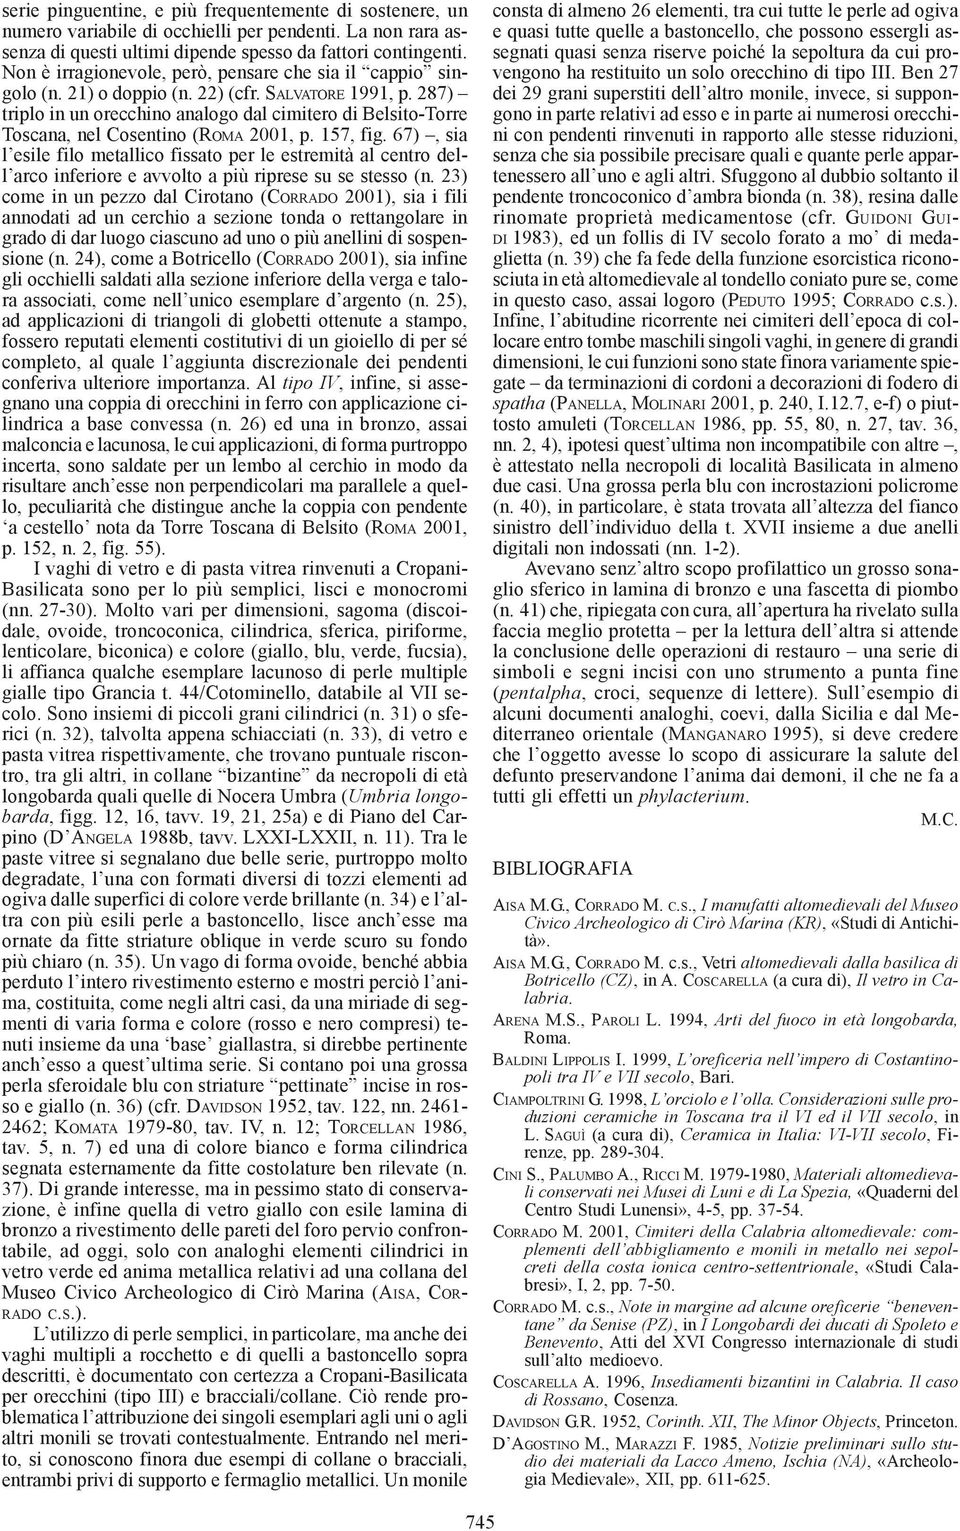 287) triplo in un orecchino analogo dal cimitero di Belsito-Torre Toscana, nel Cosentino (ROMA 2001, p. 157, fig.